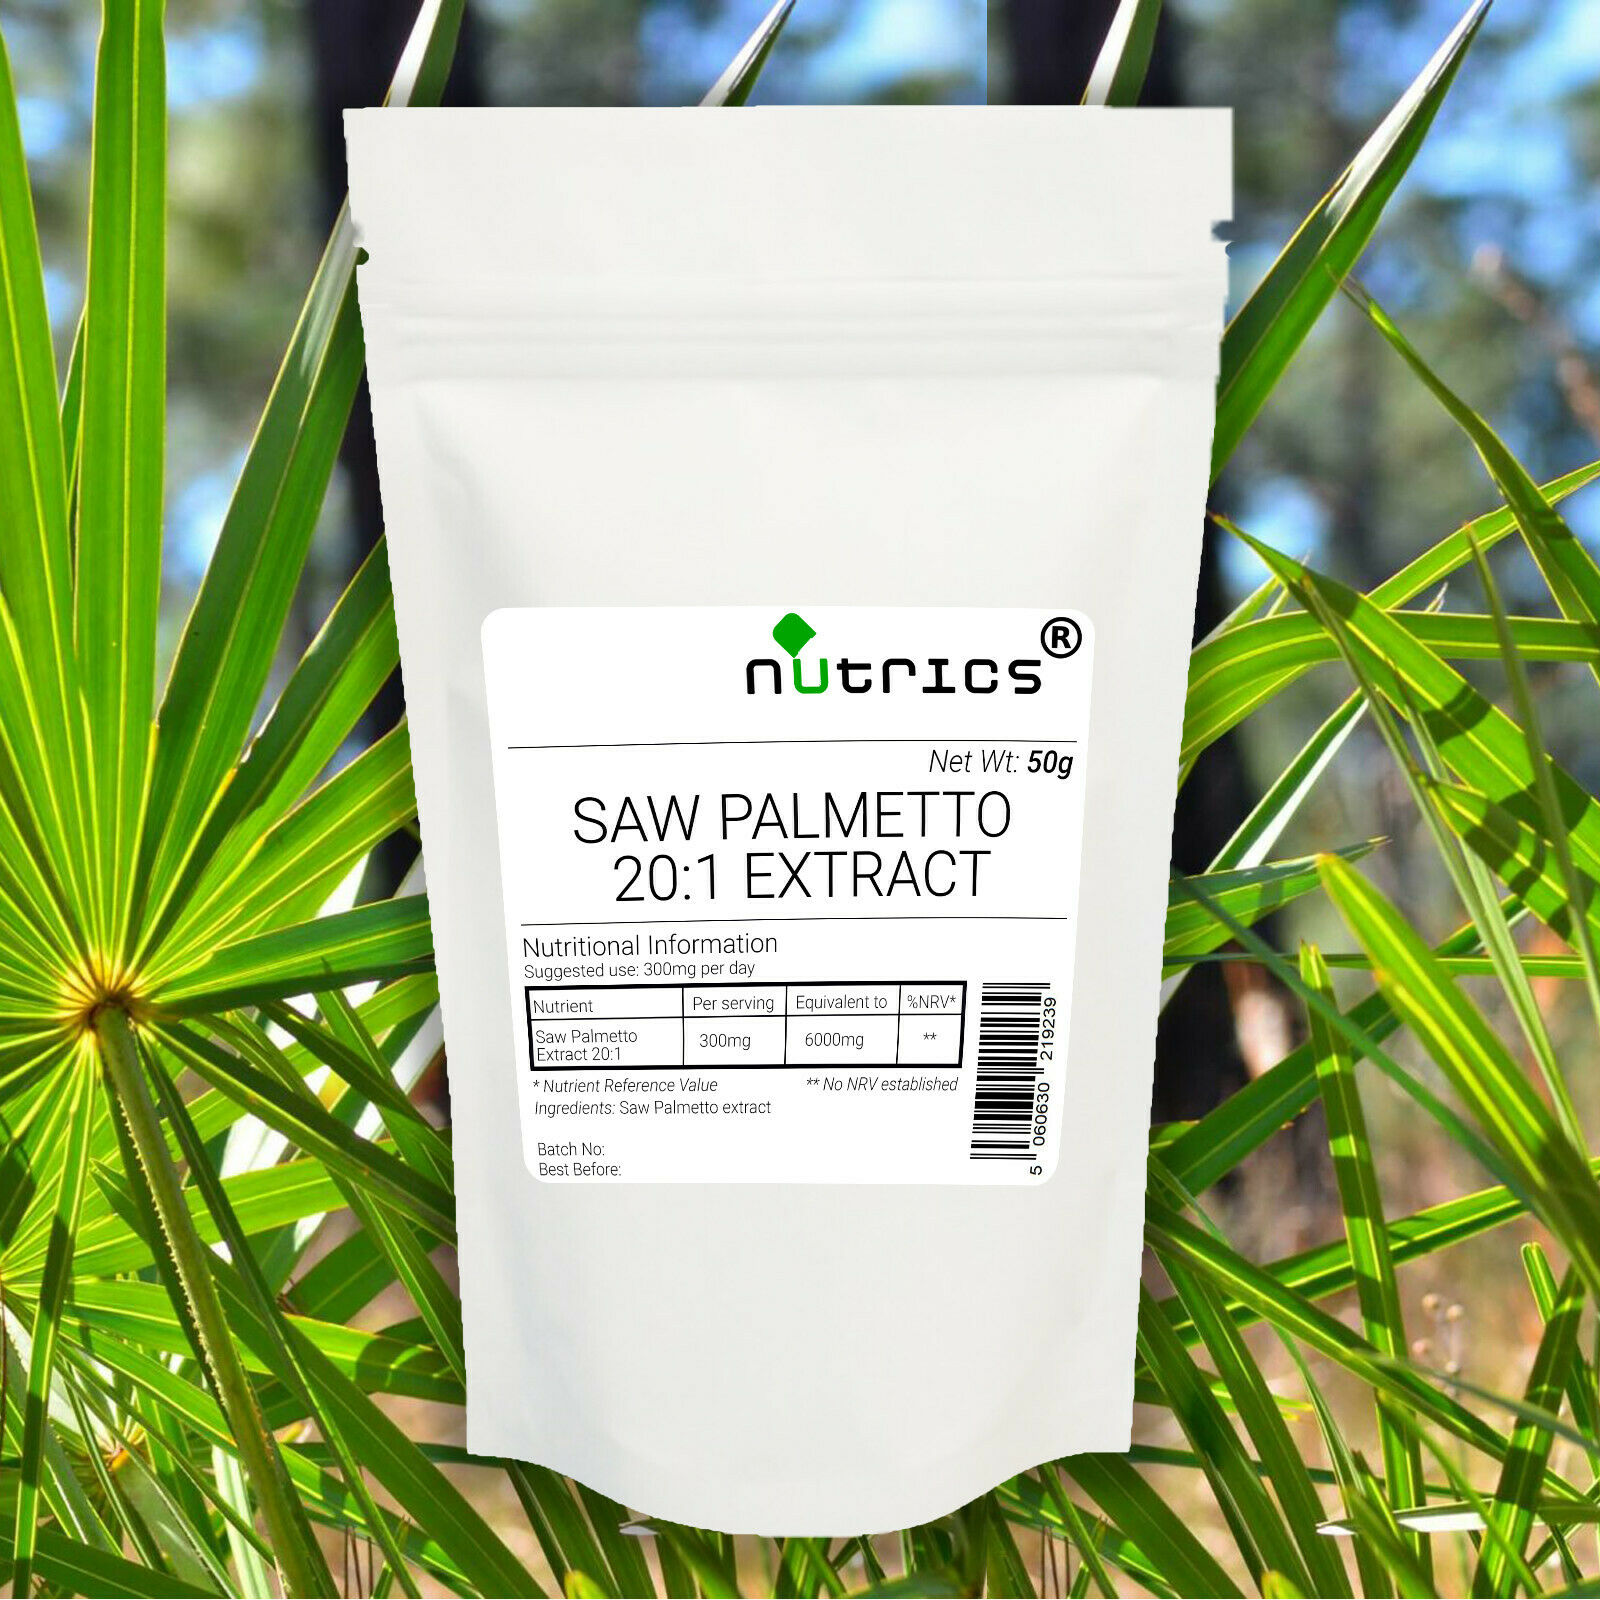 Agrothrin natural Insecticide Powder 100 g. Фото экстракт пальмового листа. Свечи с экстрактом пальмы. Экстракт пальмы сереноа